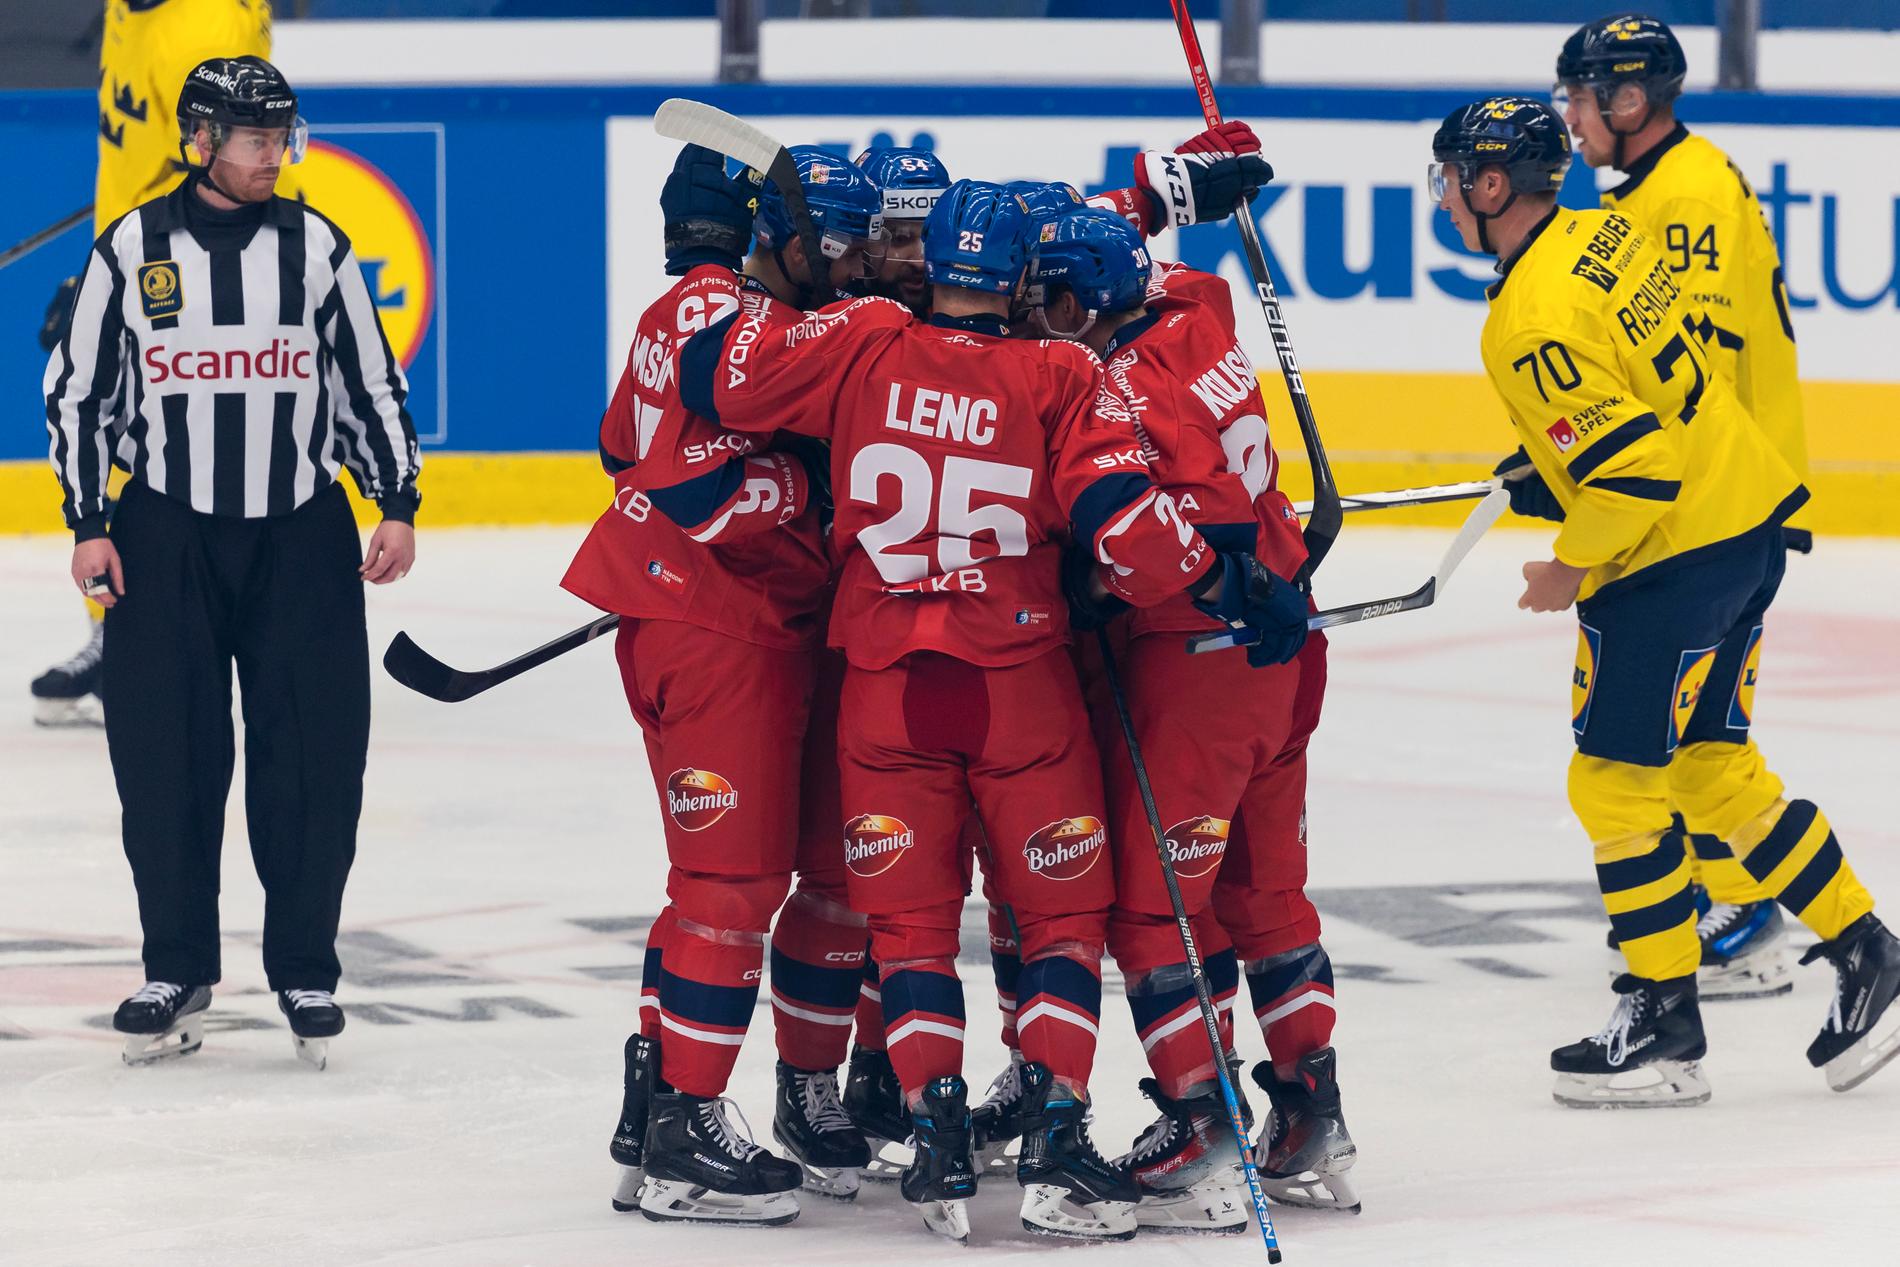 Tung start för Tre Kronor mot Tjeckien i Karjala tournament i Växjö